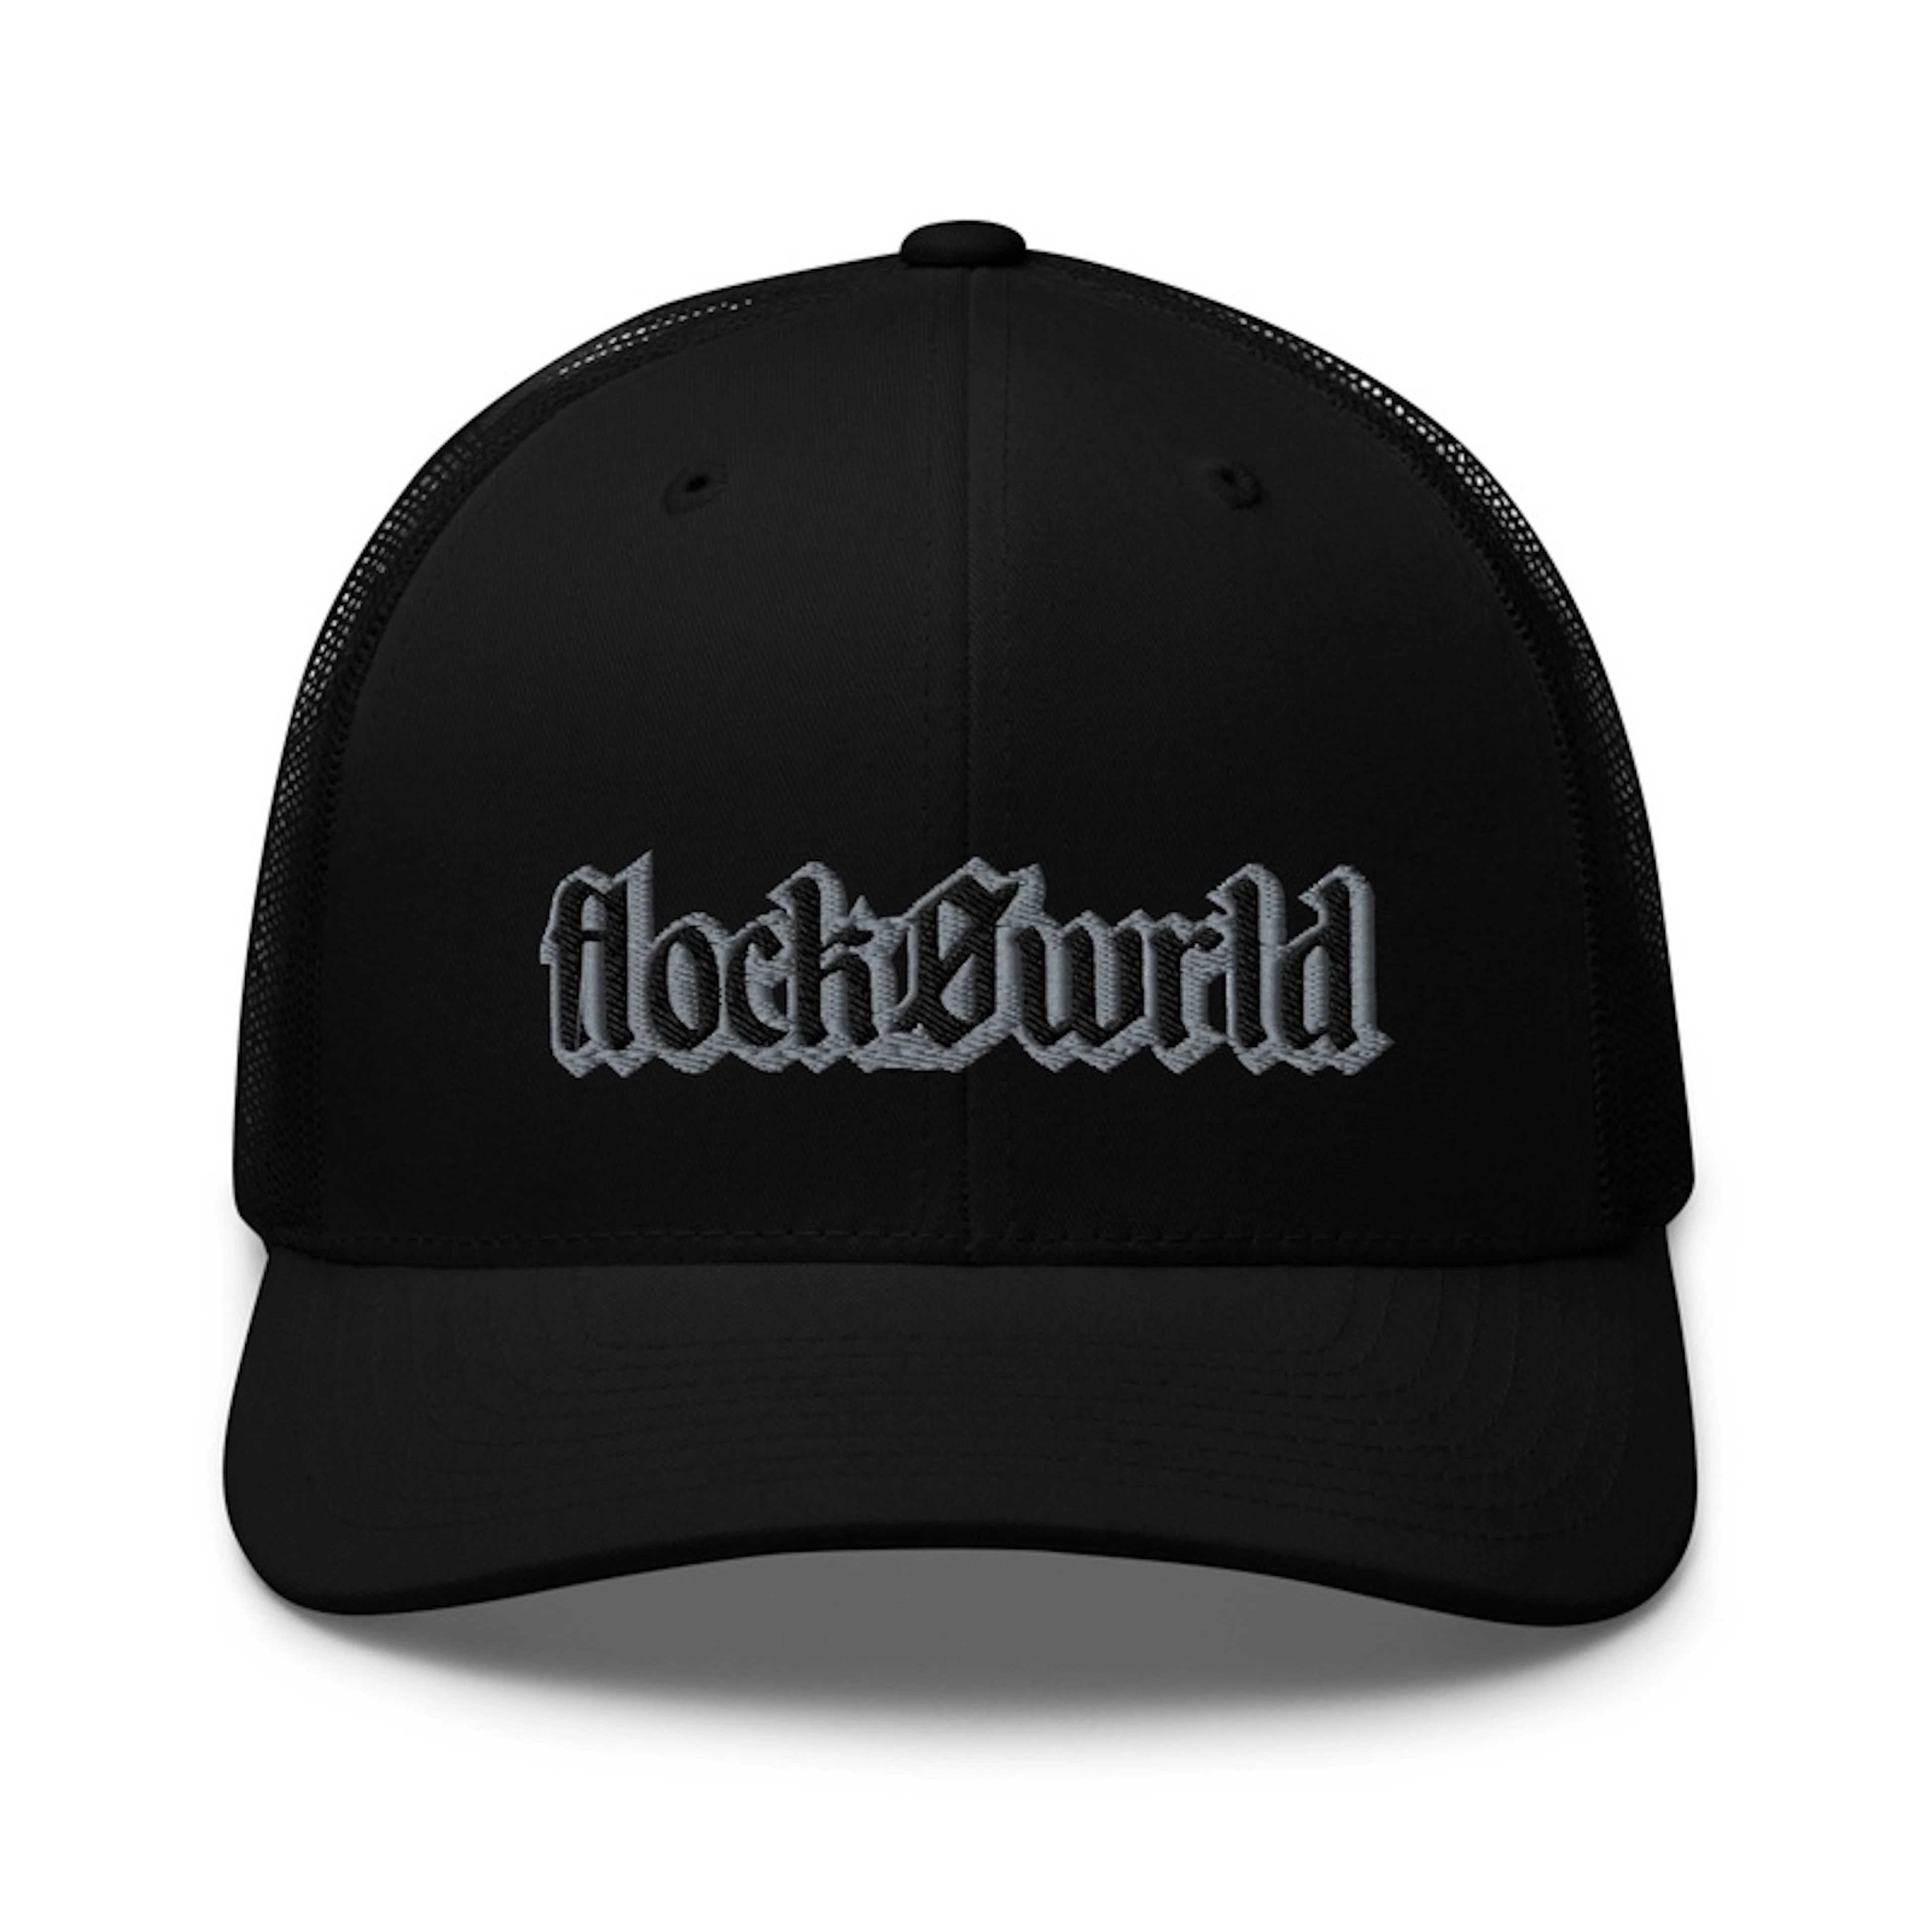 FlockoWrld Trucker Hats